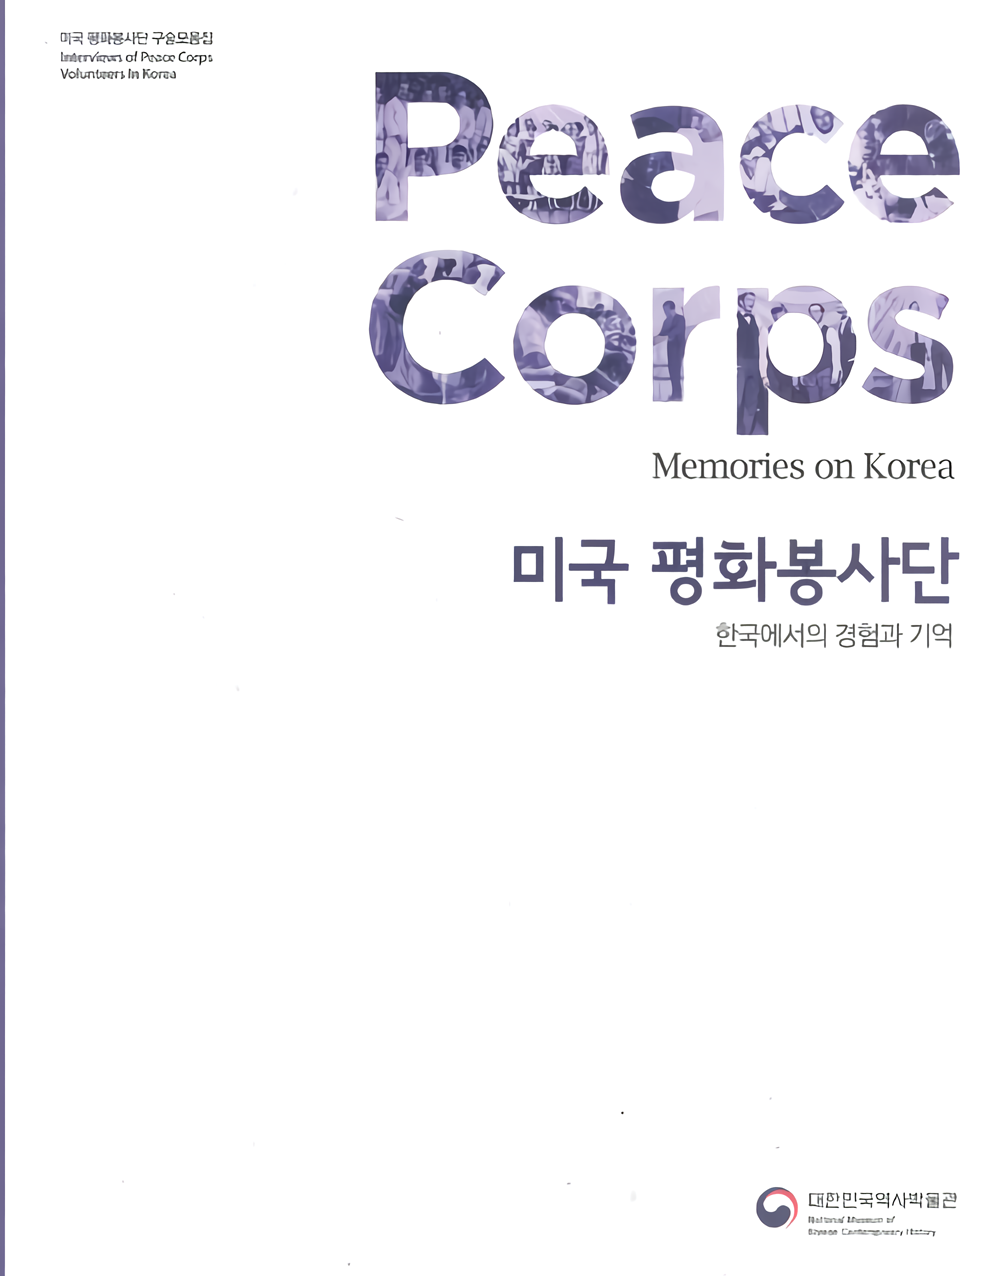 미국평화봉사단구술자료집: 한국에서의경험과기억